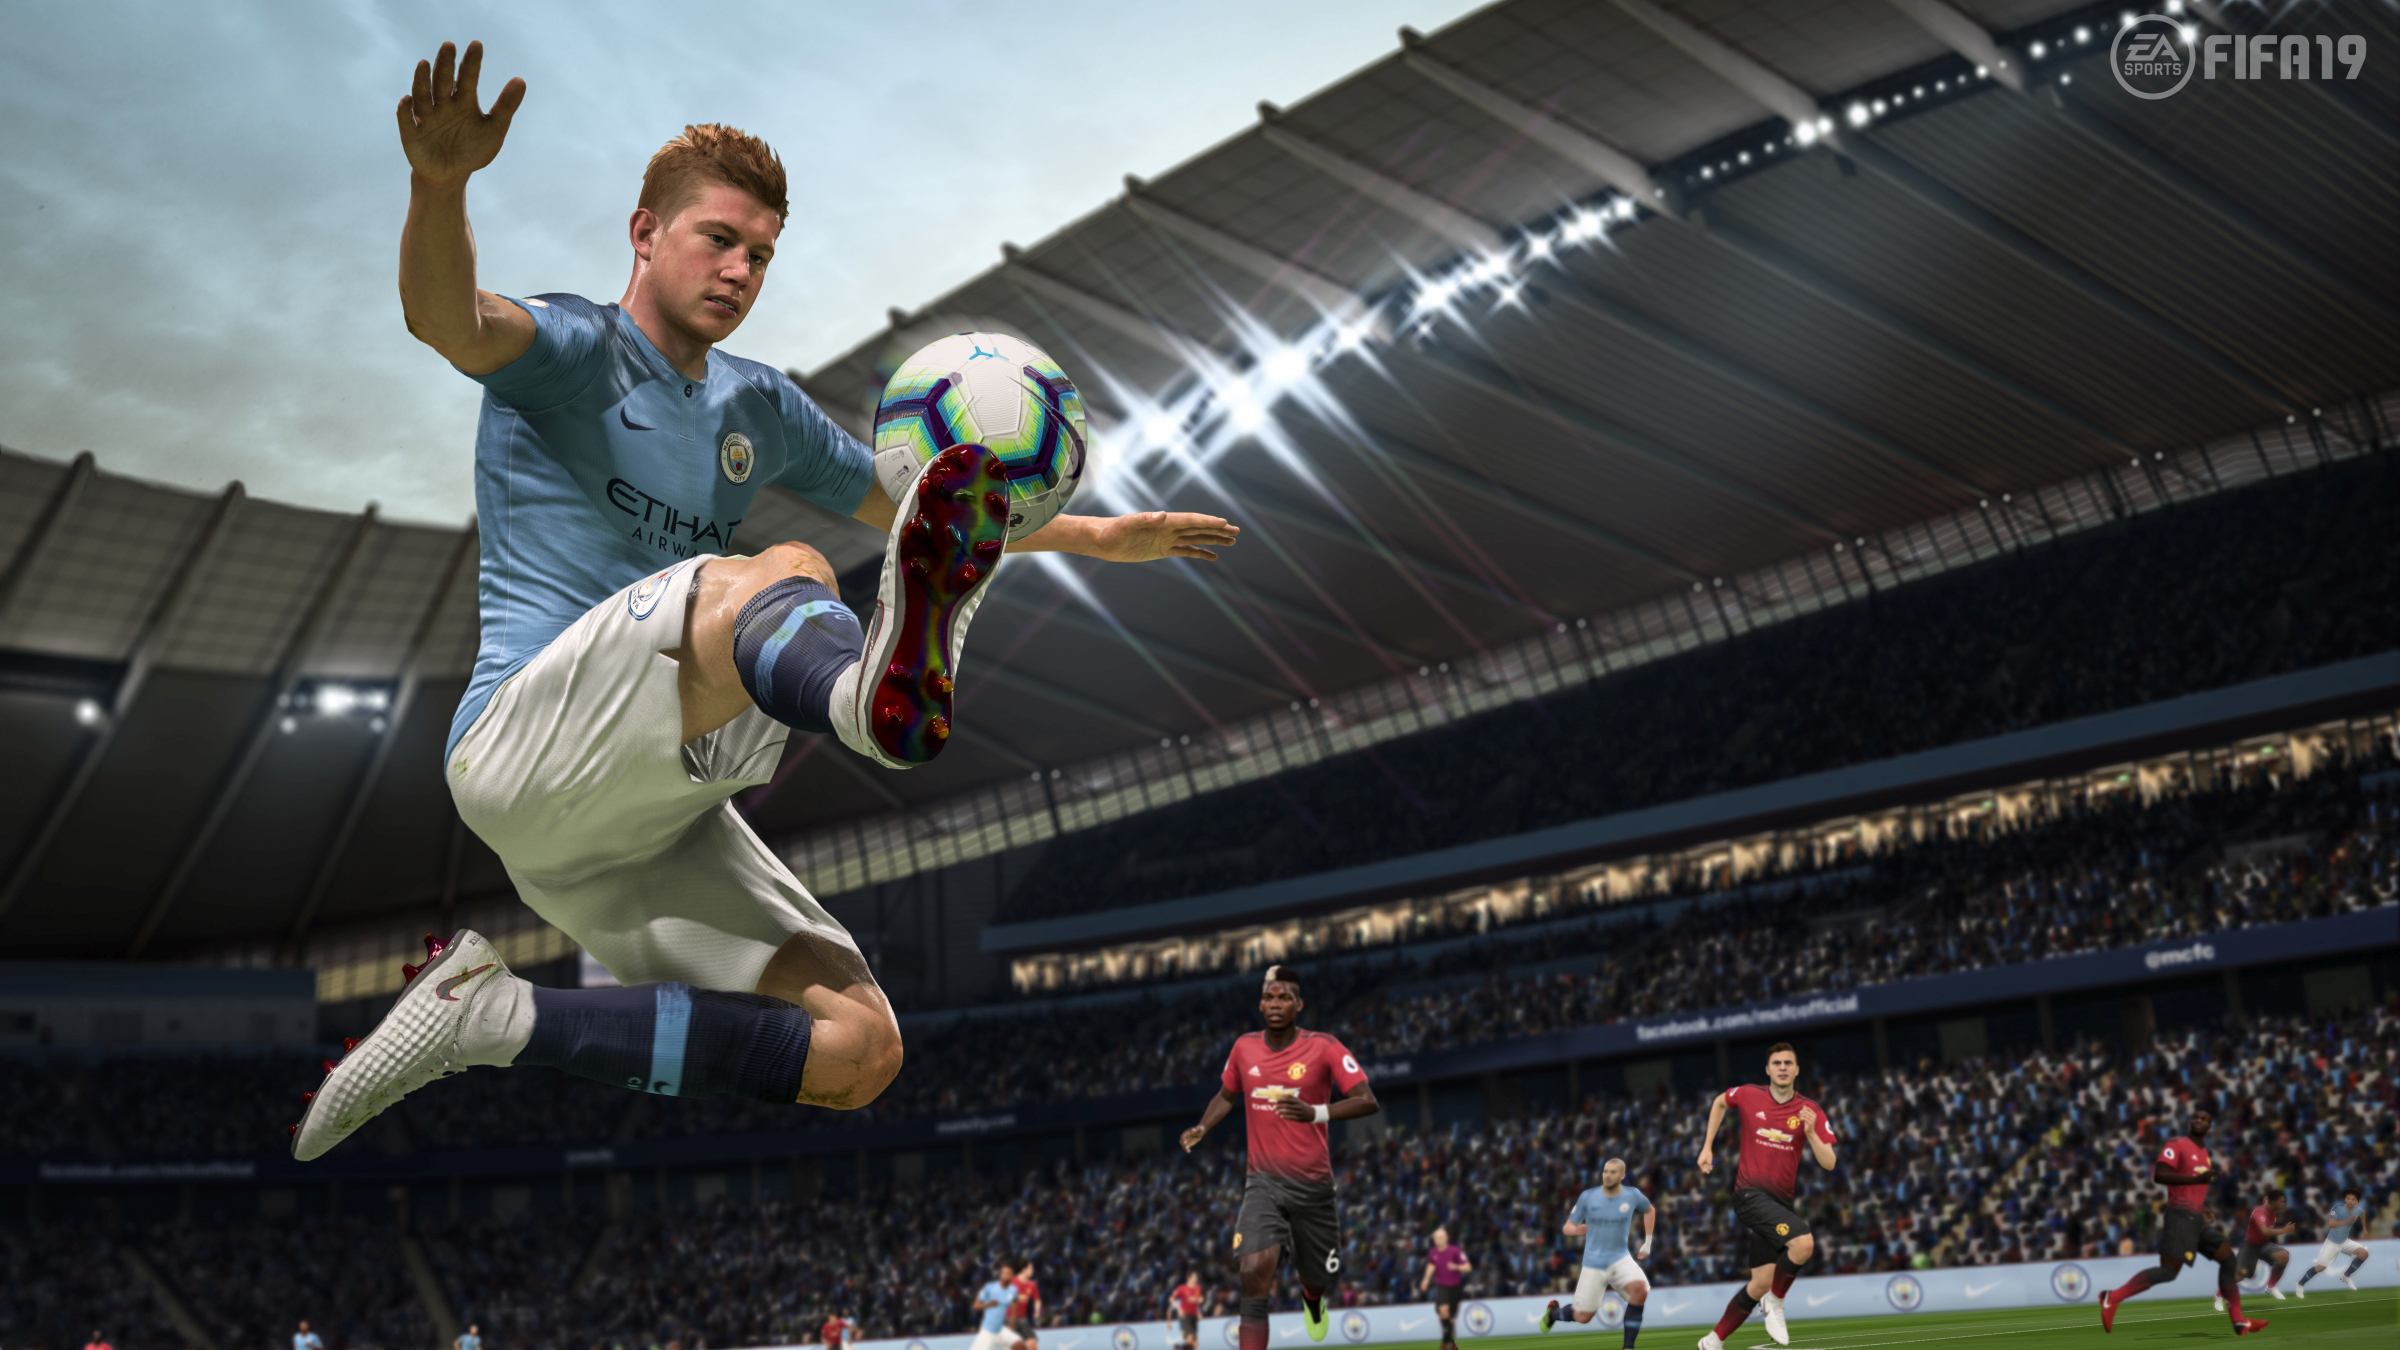 O nouă versiune a jocului FIFA va fi lansată în 2020